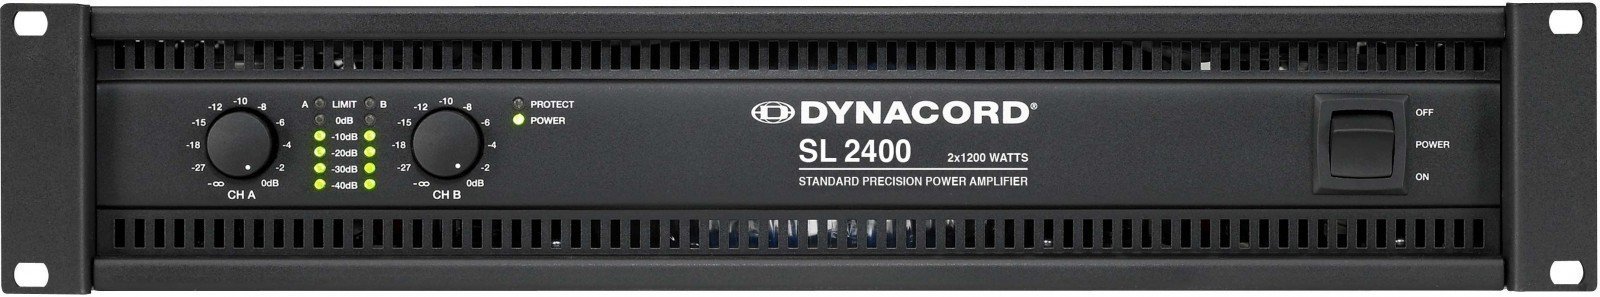 Vermogens eindversterker Dynacord SL-2400